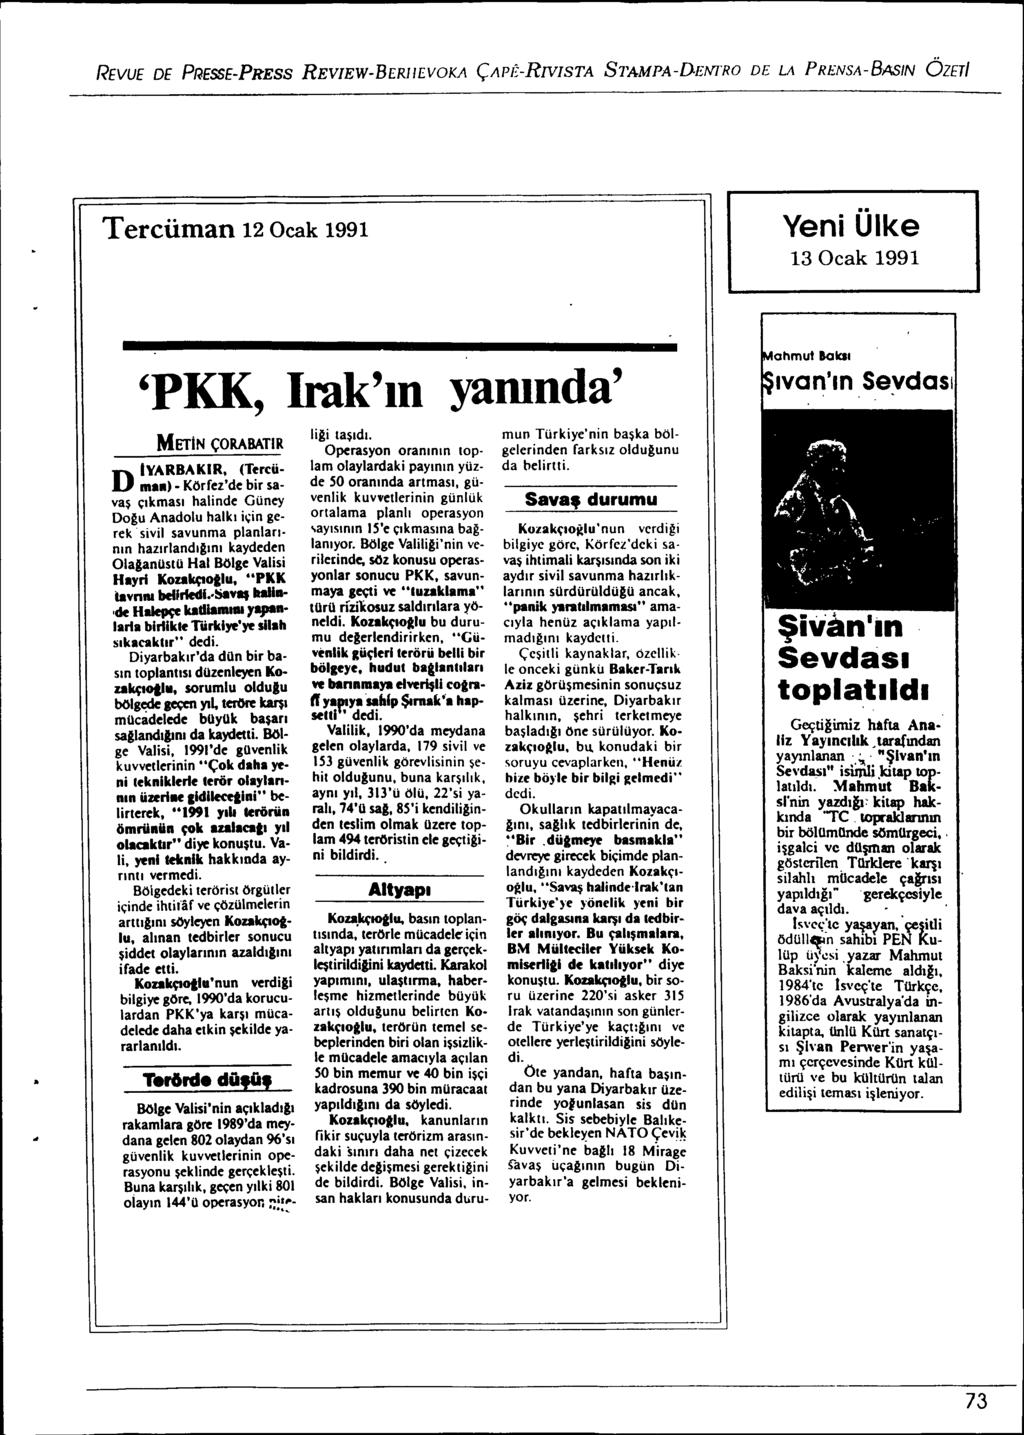 REVUE DE PRESSE-PRESS REVIEW-BERlIEVOKA ÇAPÊ-RNISTA S1'AMPA-DE/'IfRO DE LA PRENSA-BASIN ÖZETI Tercüman 12 Ocak 1991 Yeni Ülke 13 Ocak 1991 'PKK, Irak'.n yamnda' MEliN ÇORABATIR D IVARBAKIR, (Tereüma.